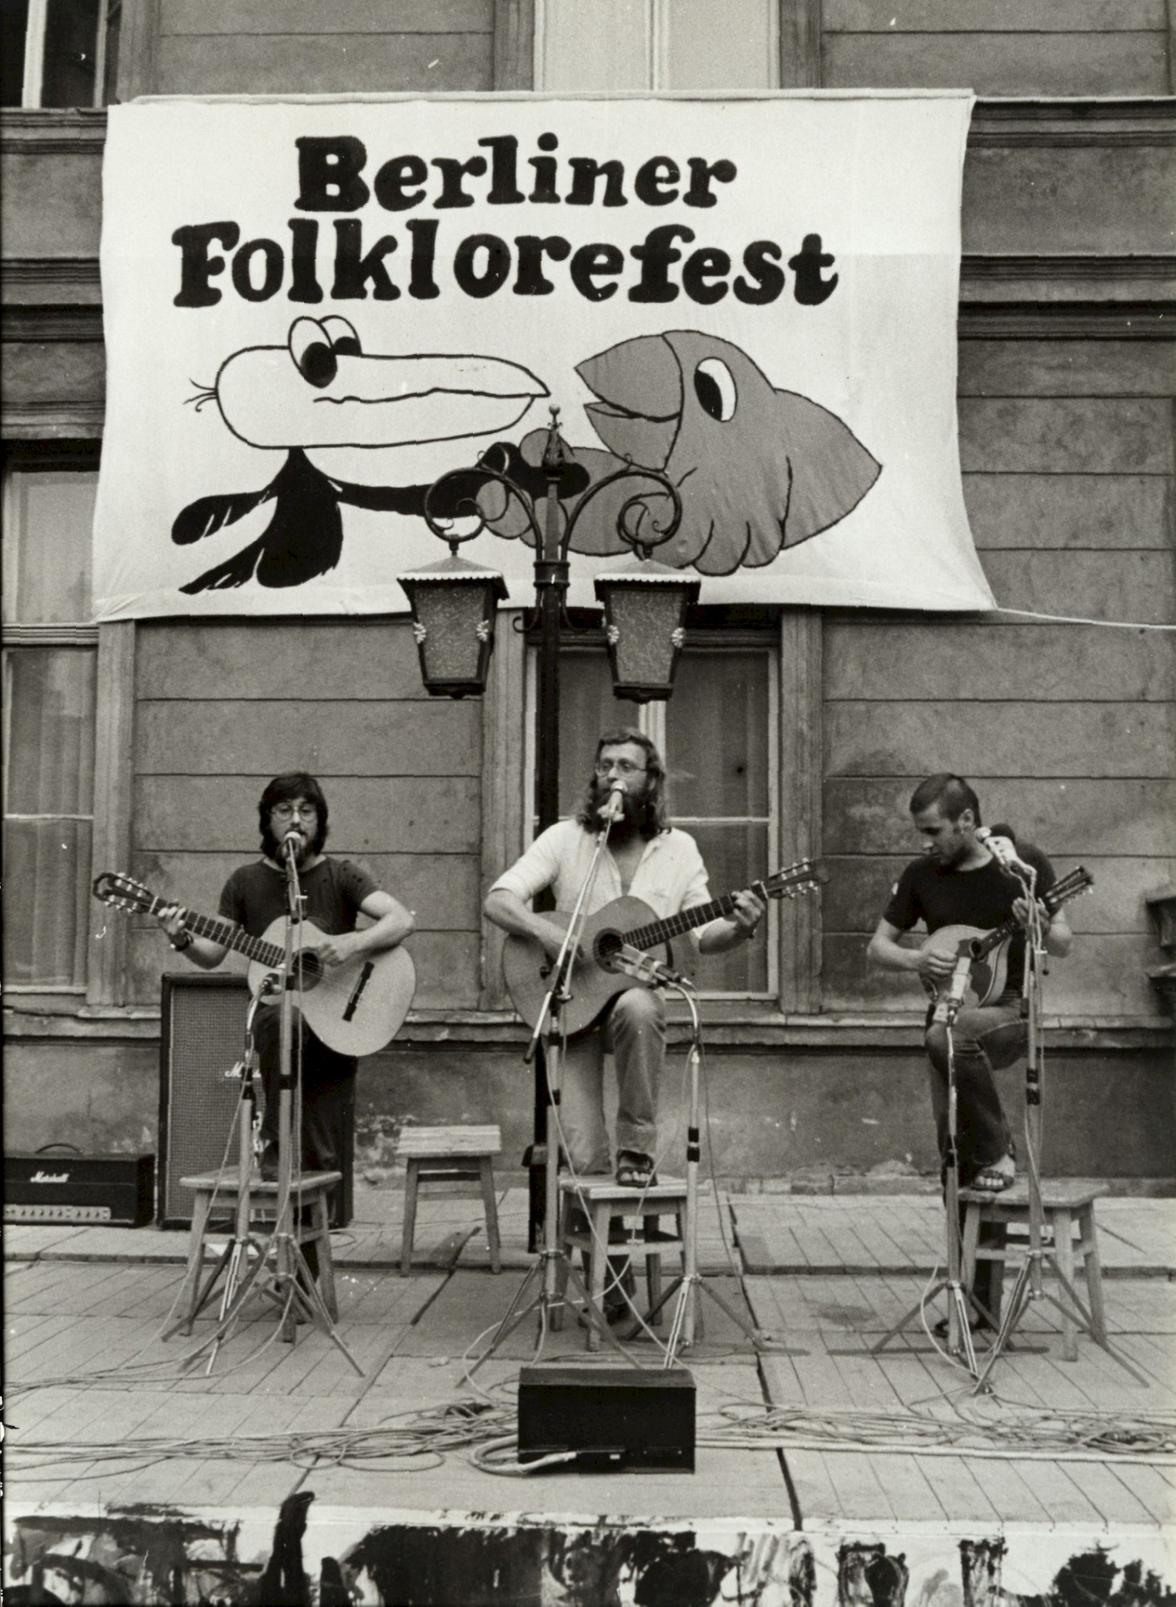 Liedehrlich aus Gera 1980 beim Berliner Folklorefest im Haus der jungen Talente (Foto: Jürgen Hohmuth/zeitort)